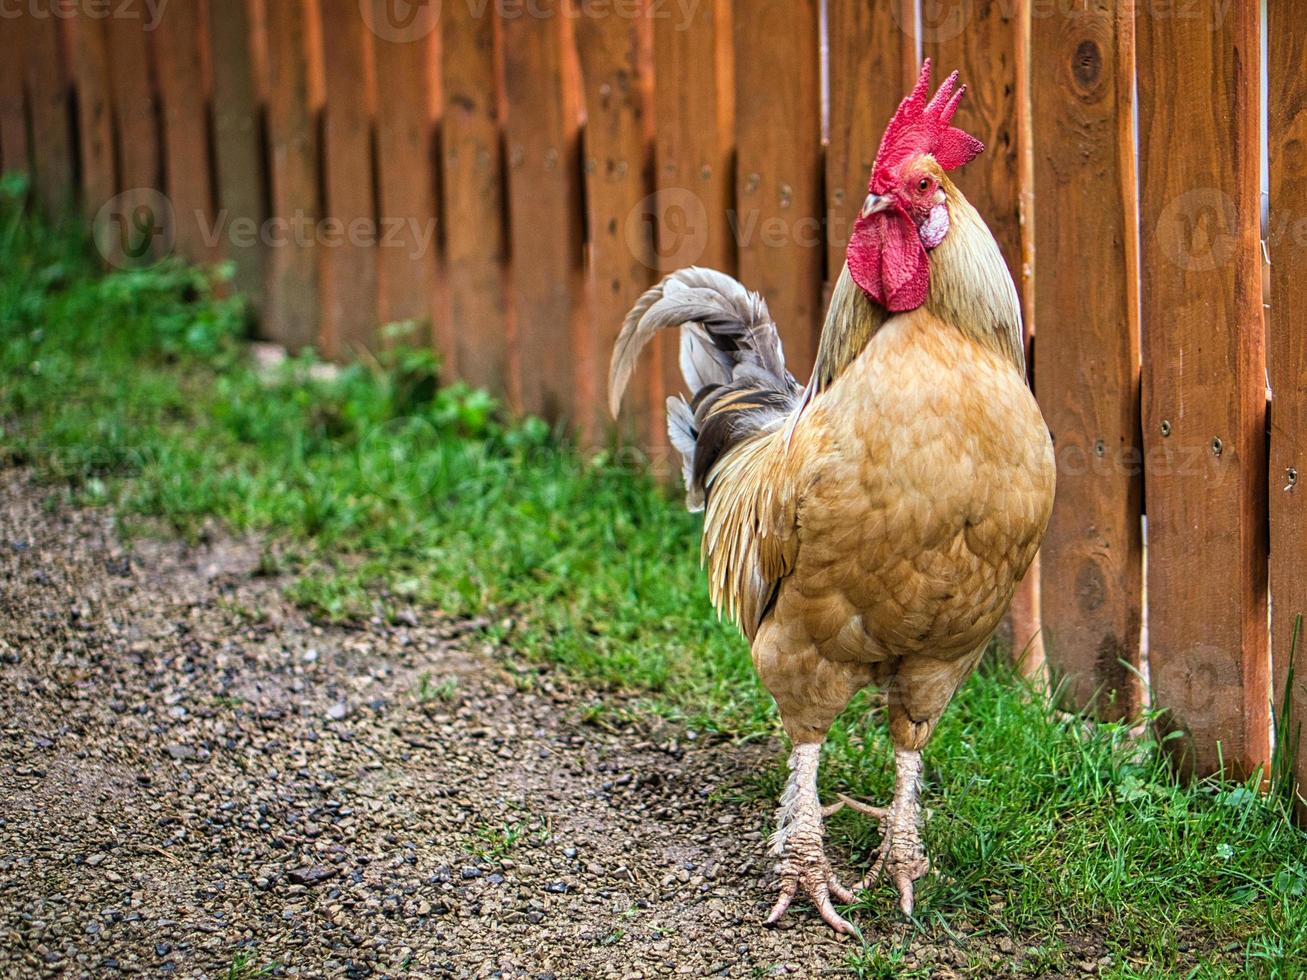 gallina en una granja en busca de comida. los pájaros de vida libre rascando el suelo en busca de comida. foto